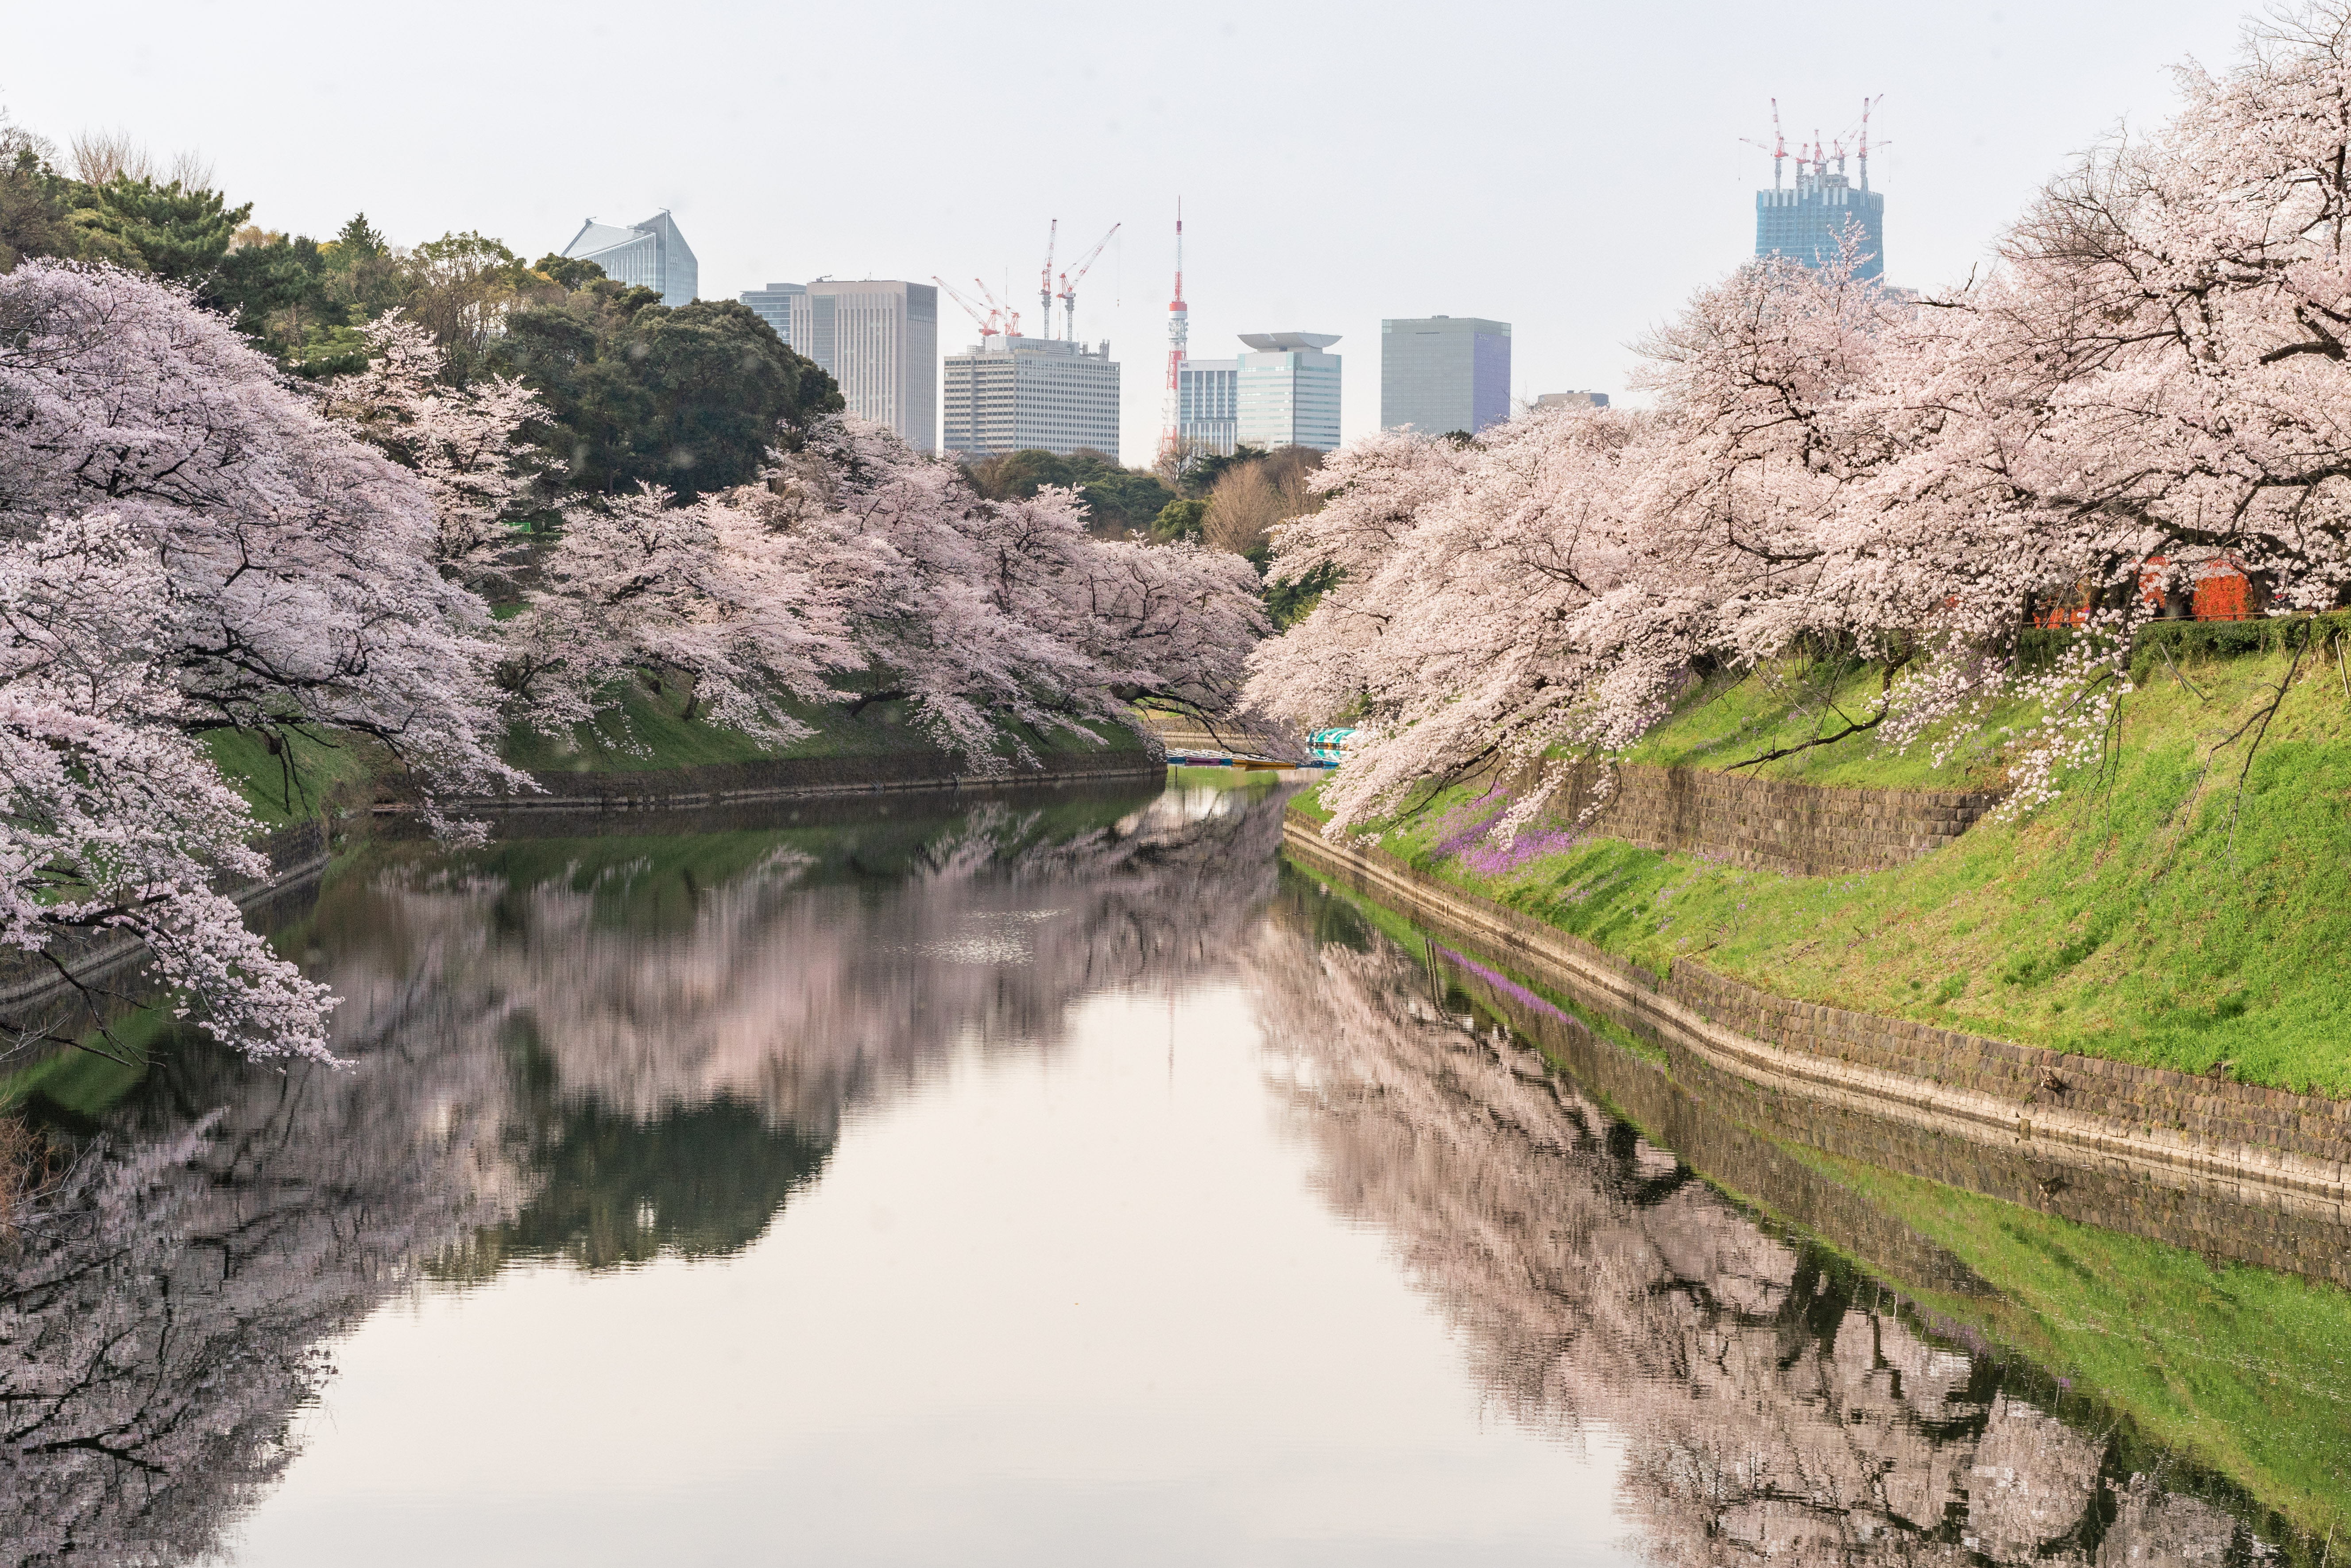 免费照片沿河生长的美丽樱花树